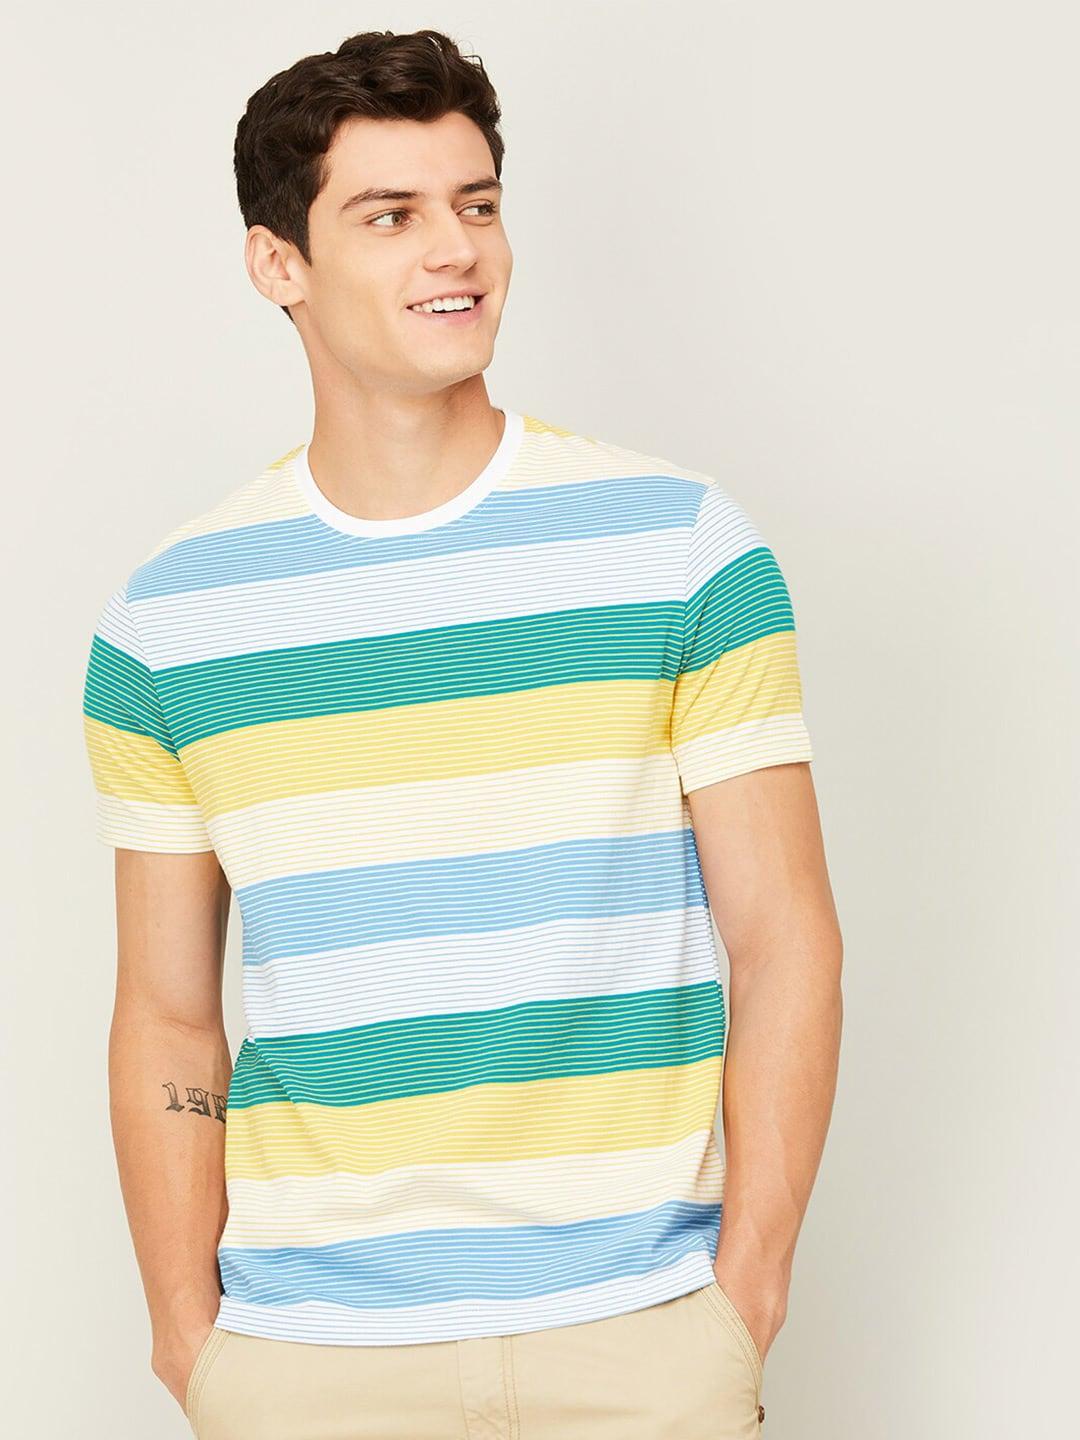 bossinistriped striped pure cotton t-shirt